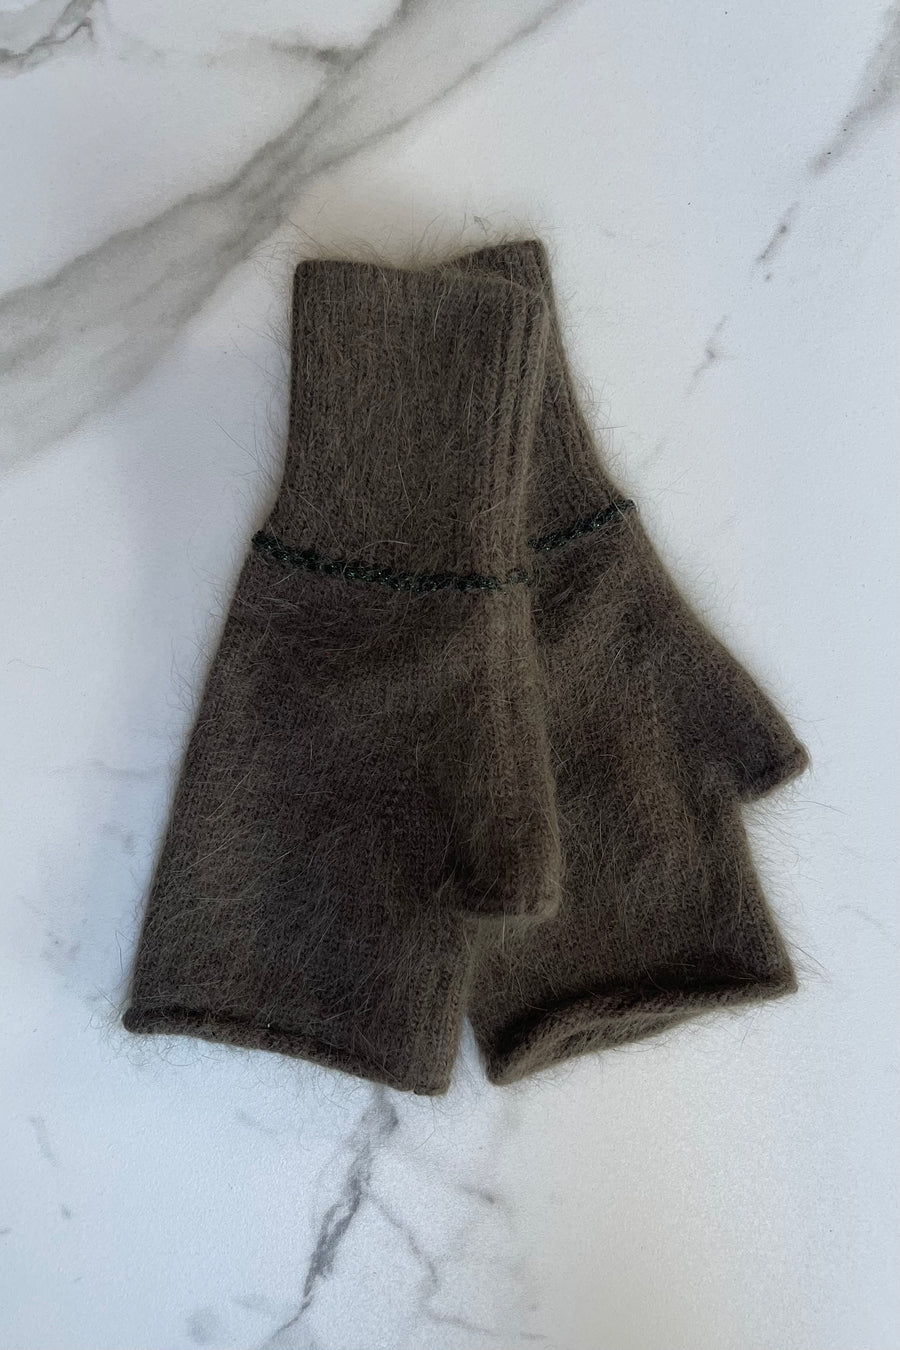 Kaki cashmere mittens, fingerless gloves 